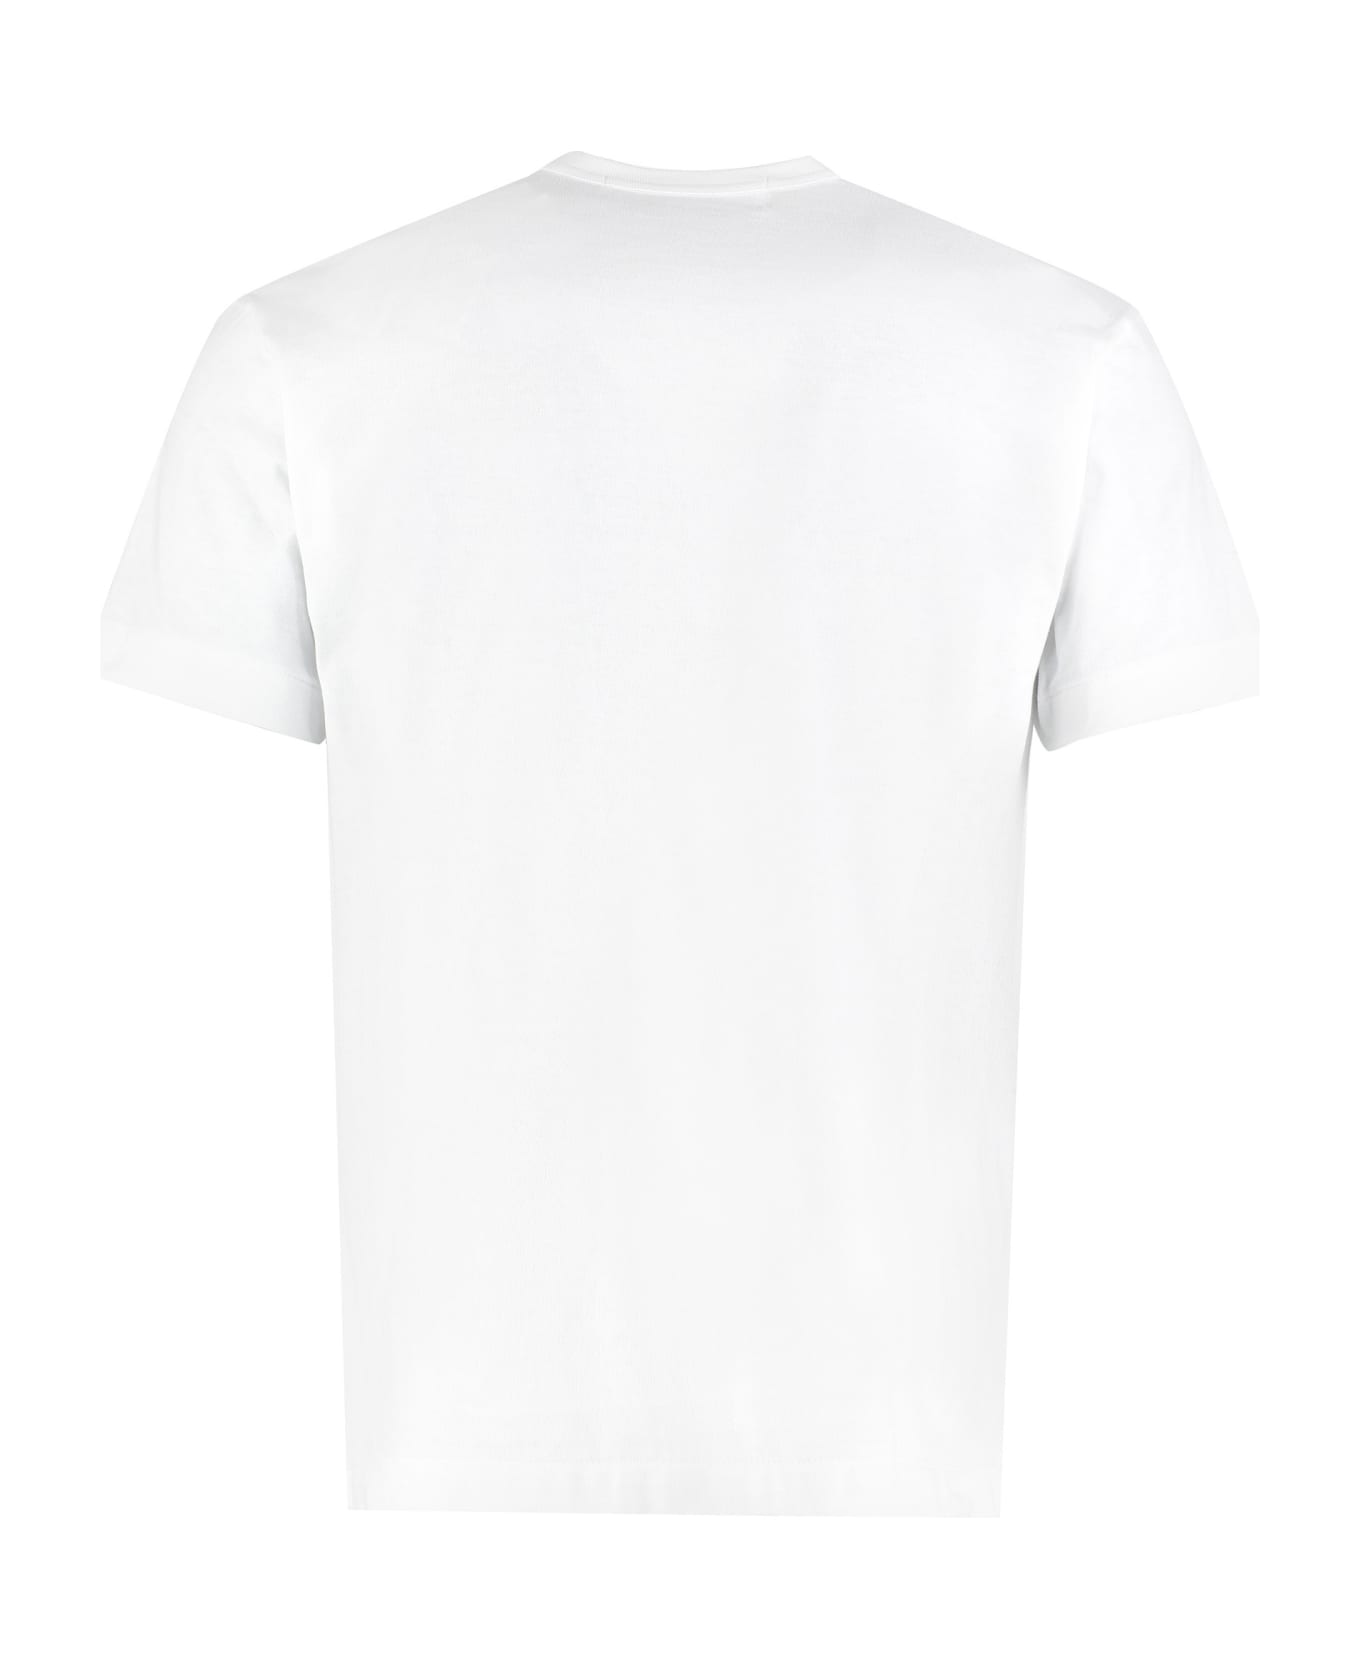 Comme des Garçons Play Patch Detail Cotton T-shirt - White シャツ